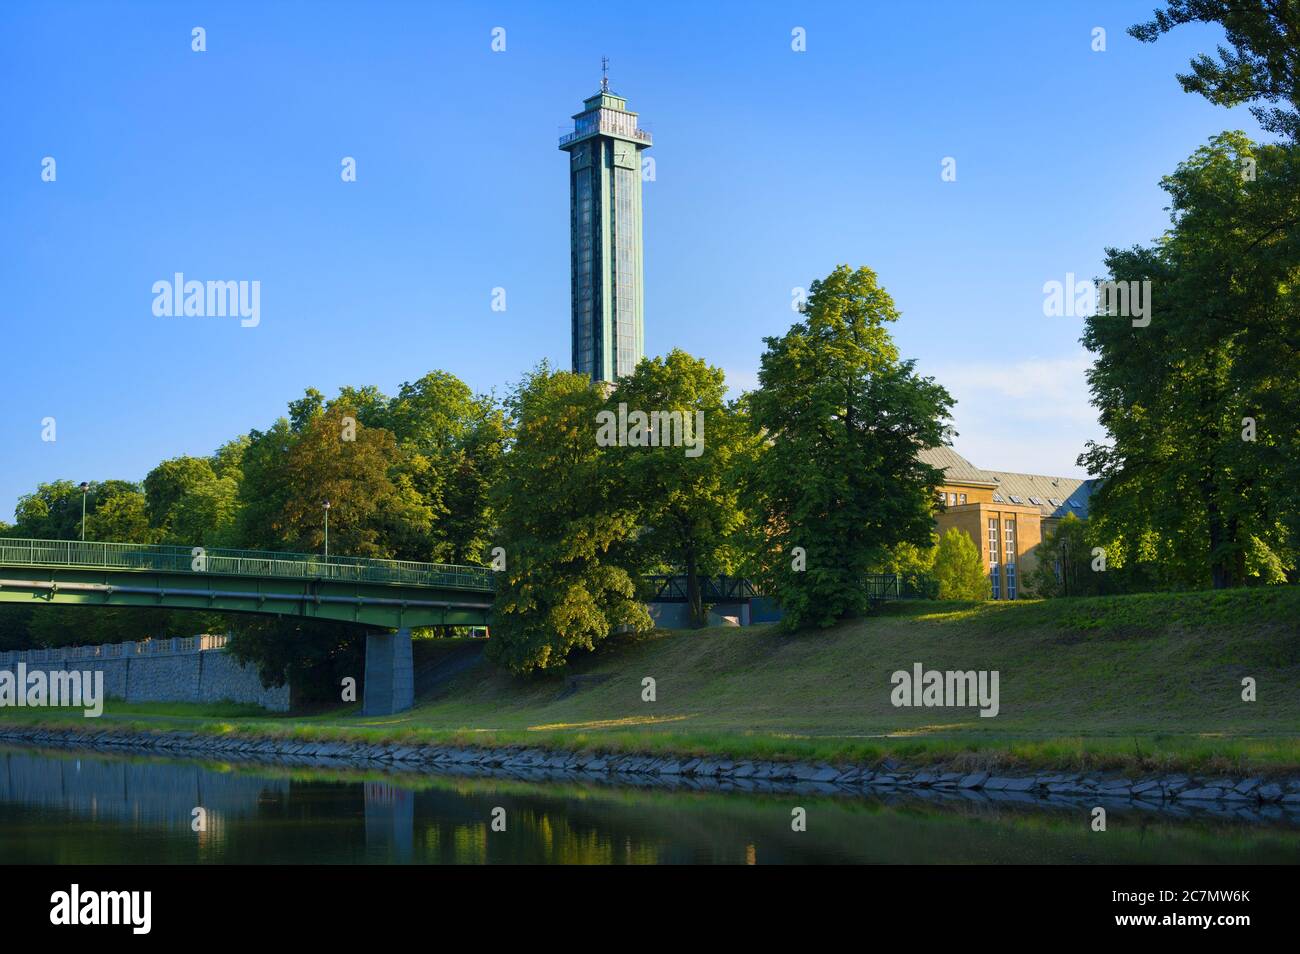 Ostravice Fluss, Komenskeho sady Park, Ostrava, Tschechien / Tschechien - Abendlandschaft der schönen Natur des Parks im Zentrum der Stadt. Towe Stockfoto